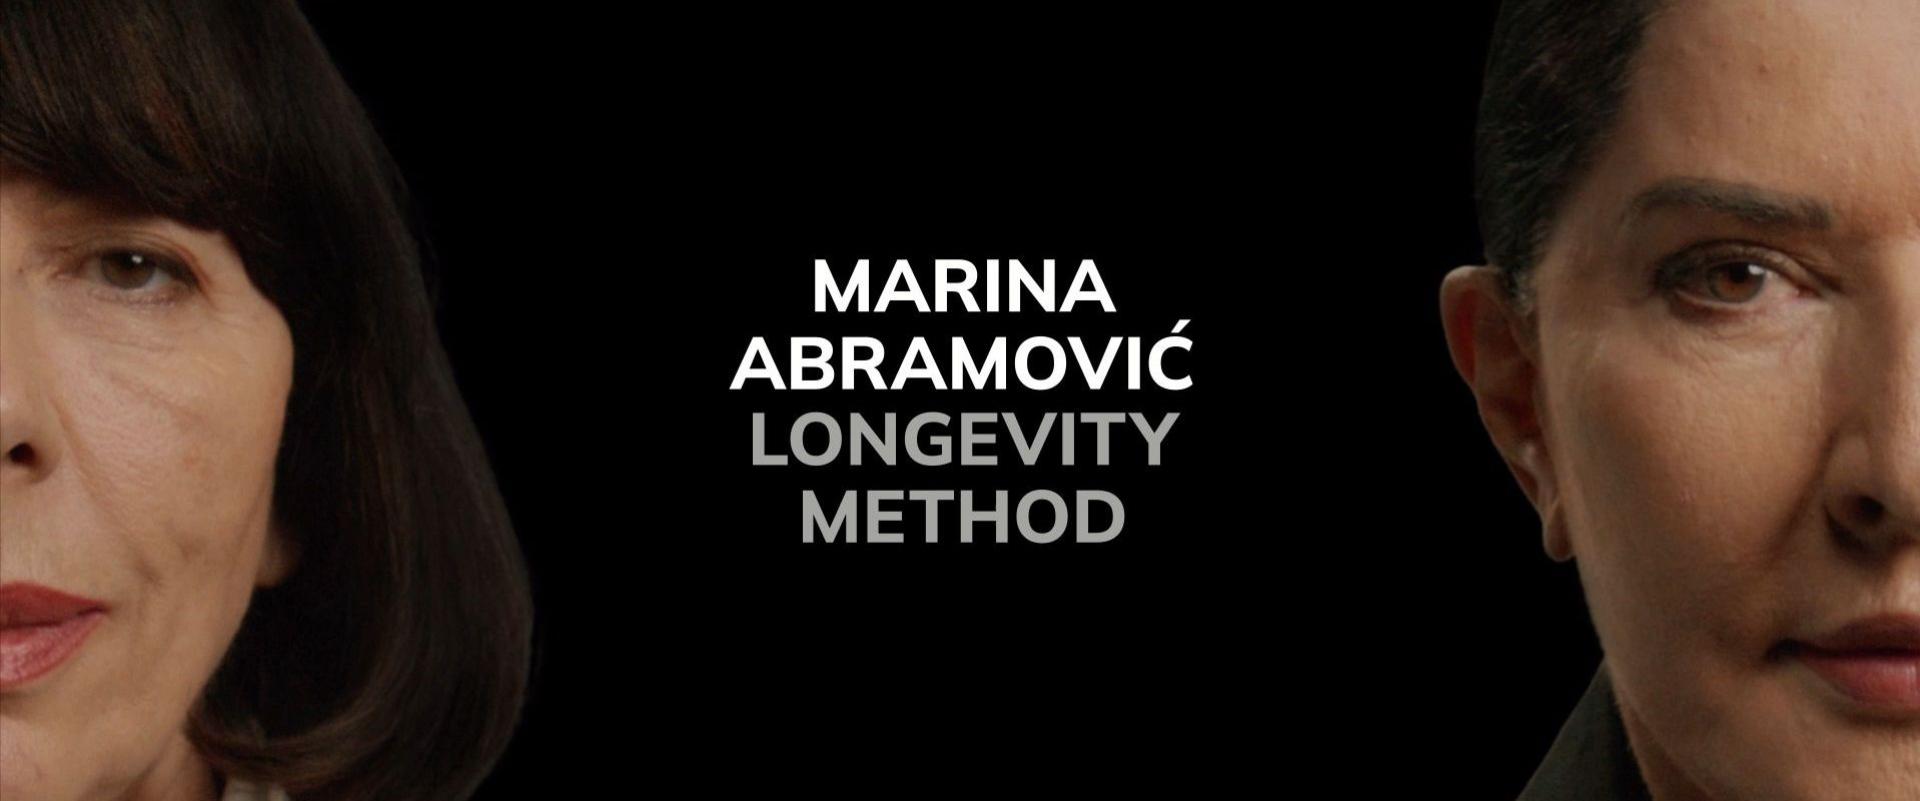 Marina Abramović wypuszcza kolekcję produktów do pielęgnacji skóry i odnowy biologicznej